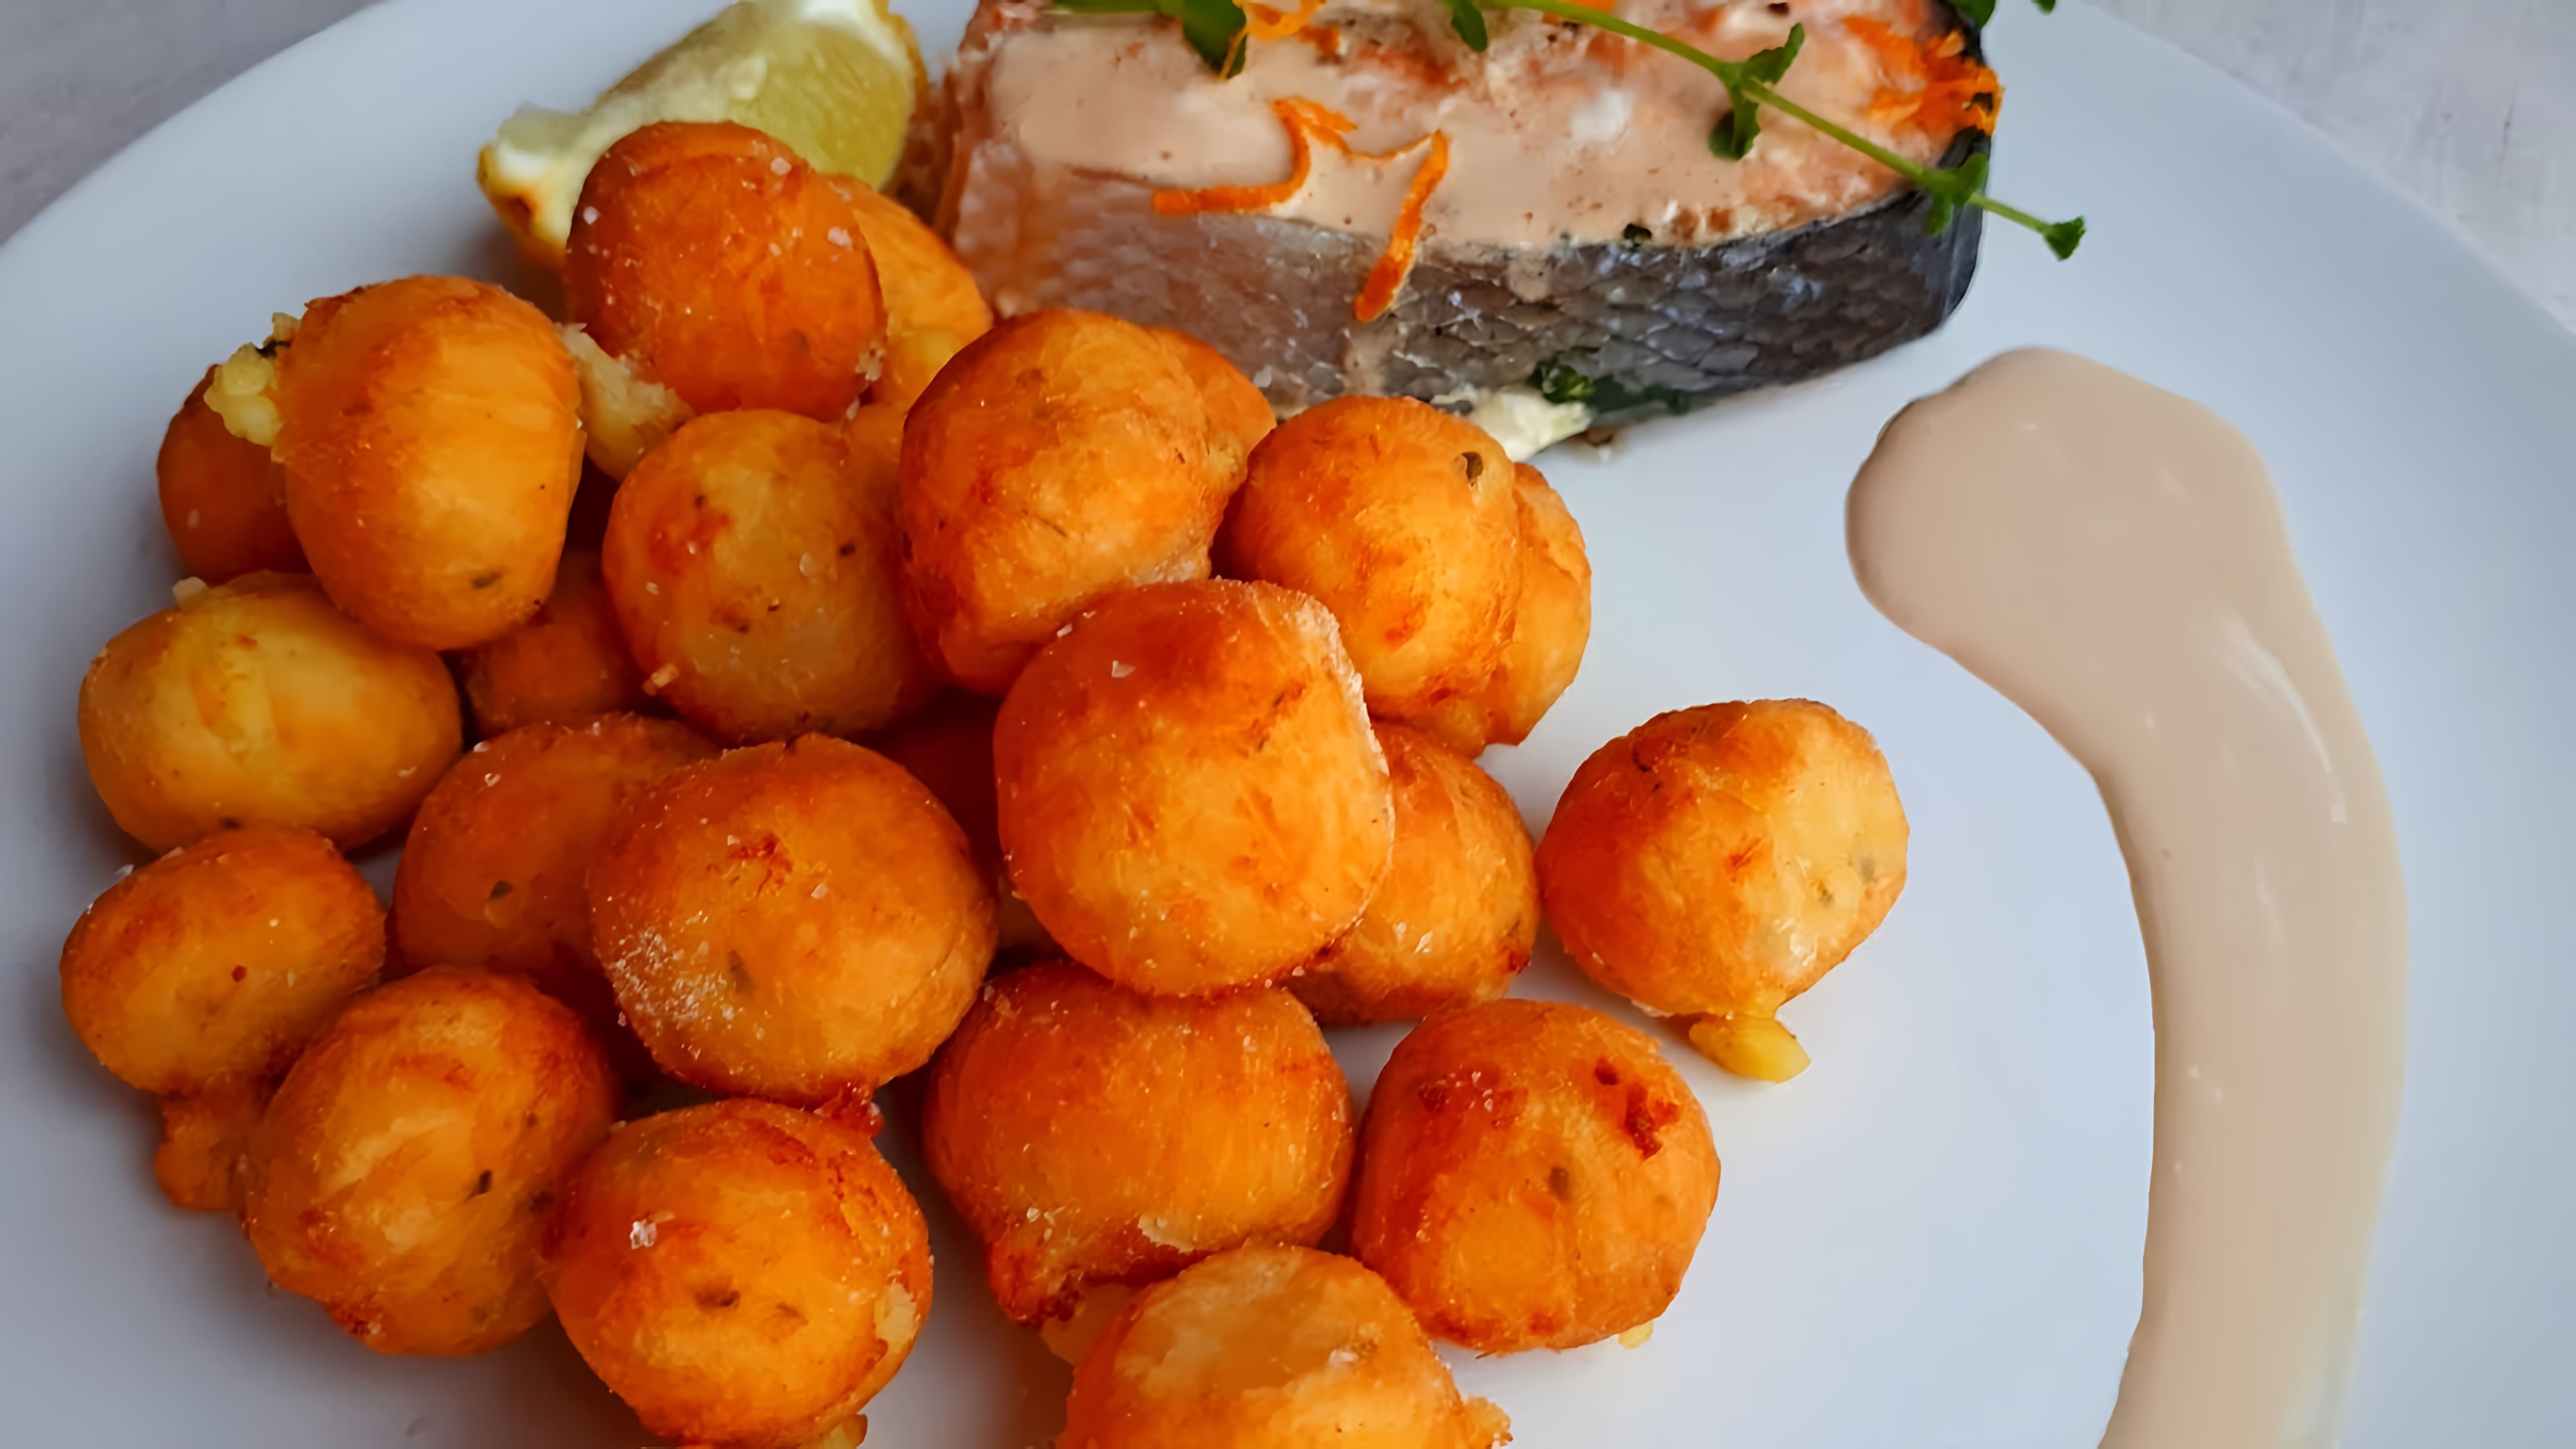 В этом видео демонстрируется рецепт приготовления картофеля Буше или картофельных шариков